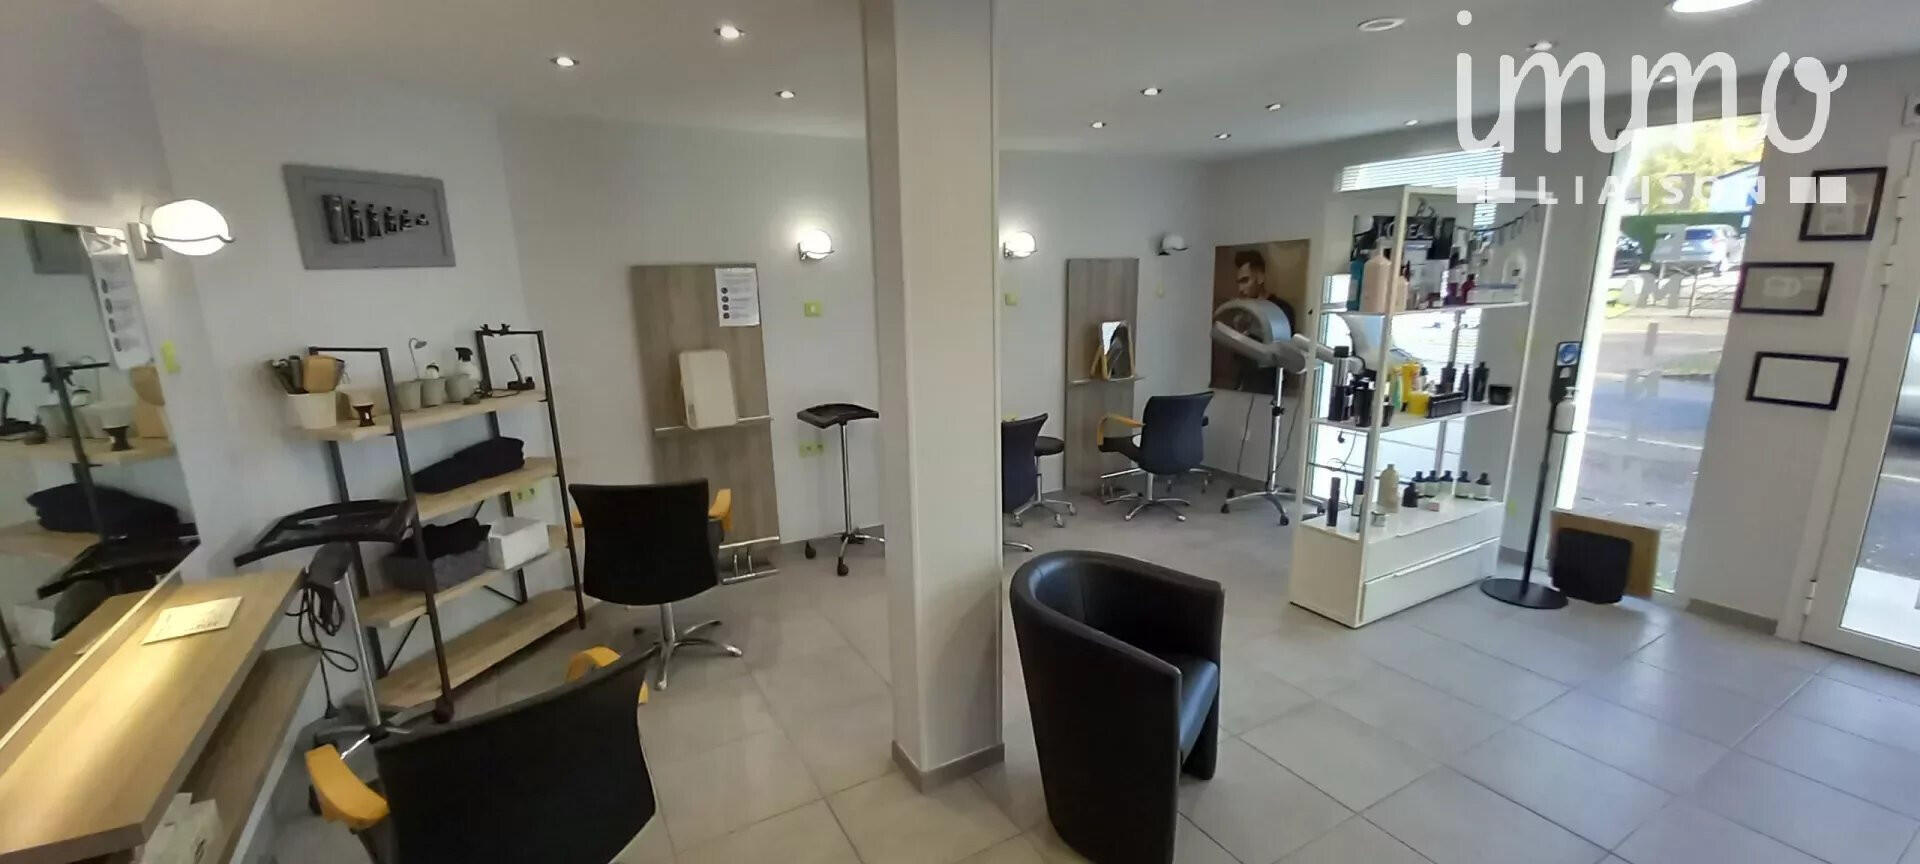 A vendre salon de coiffure de 76m² à Vineuil